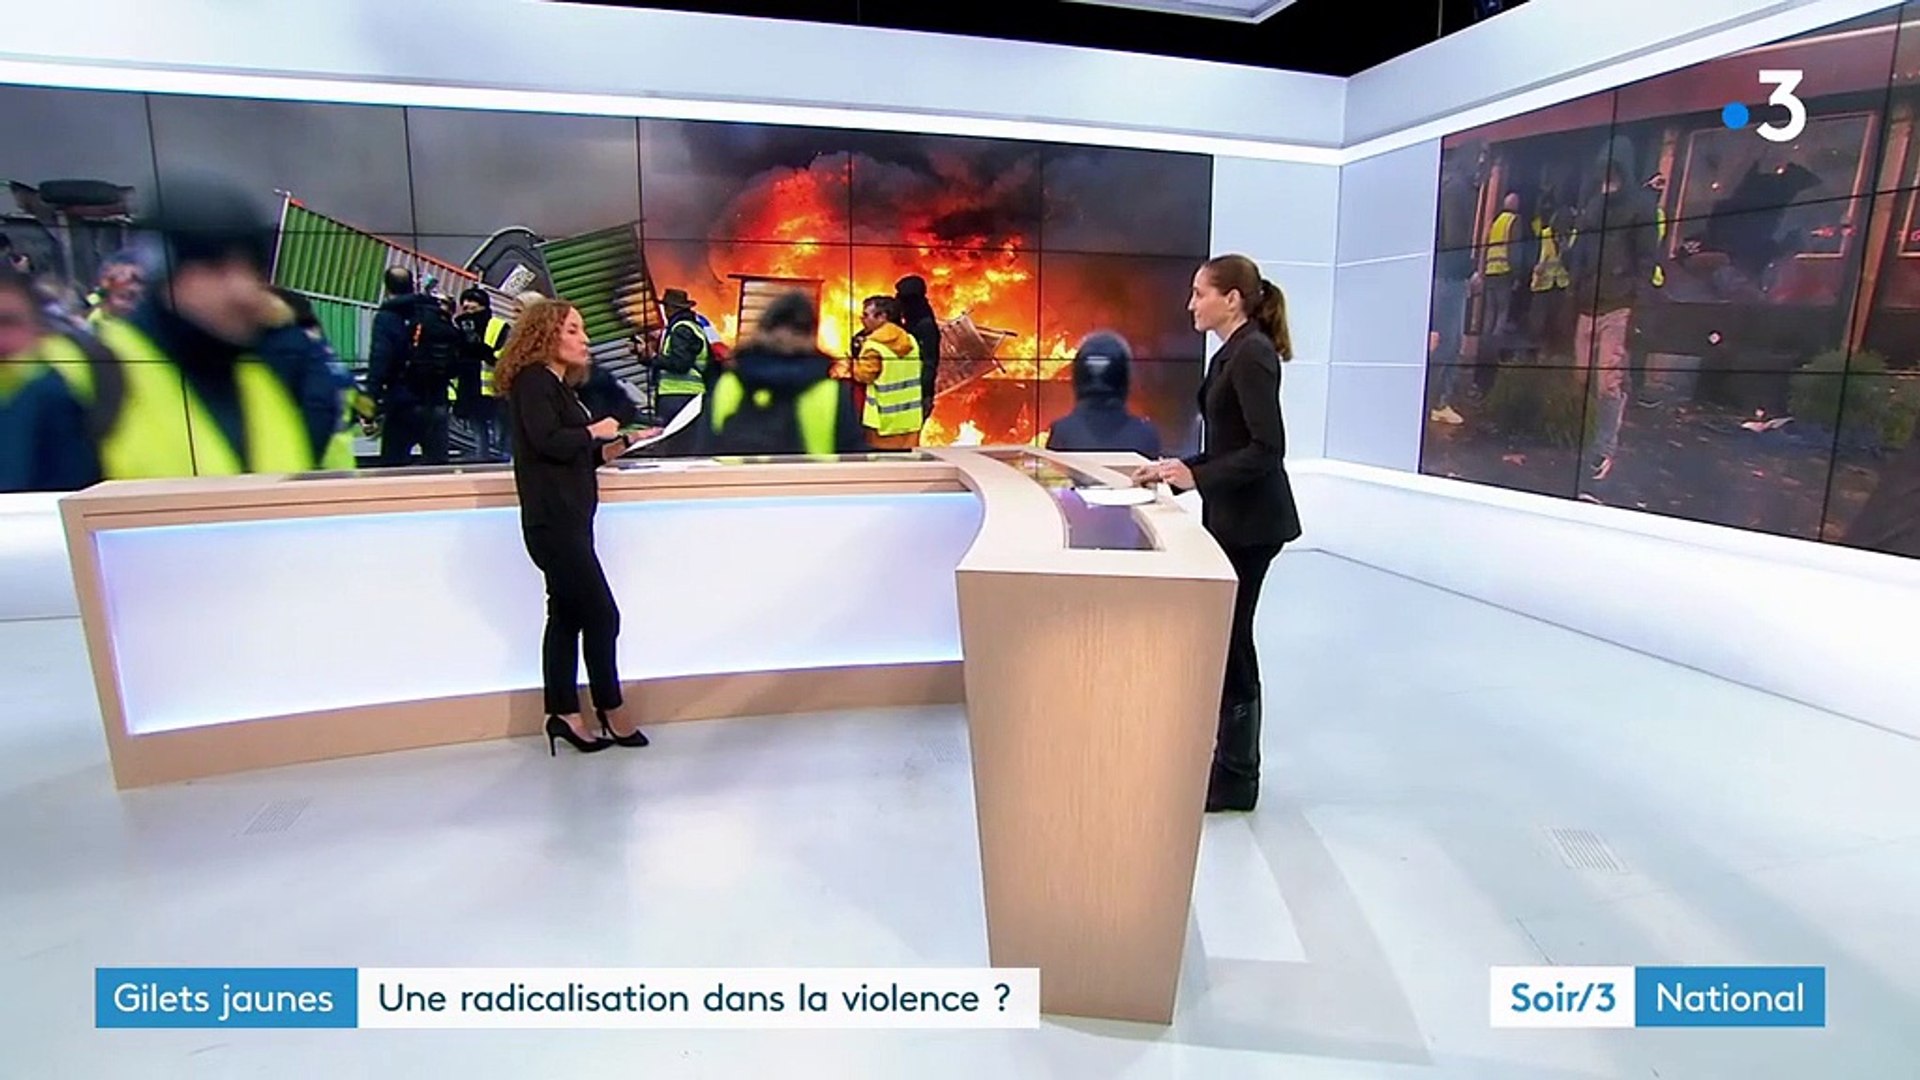 Gilets jaunes" : une radicalisation dans la violence ? - Vidéo Dailymotion